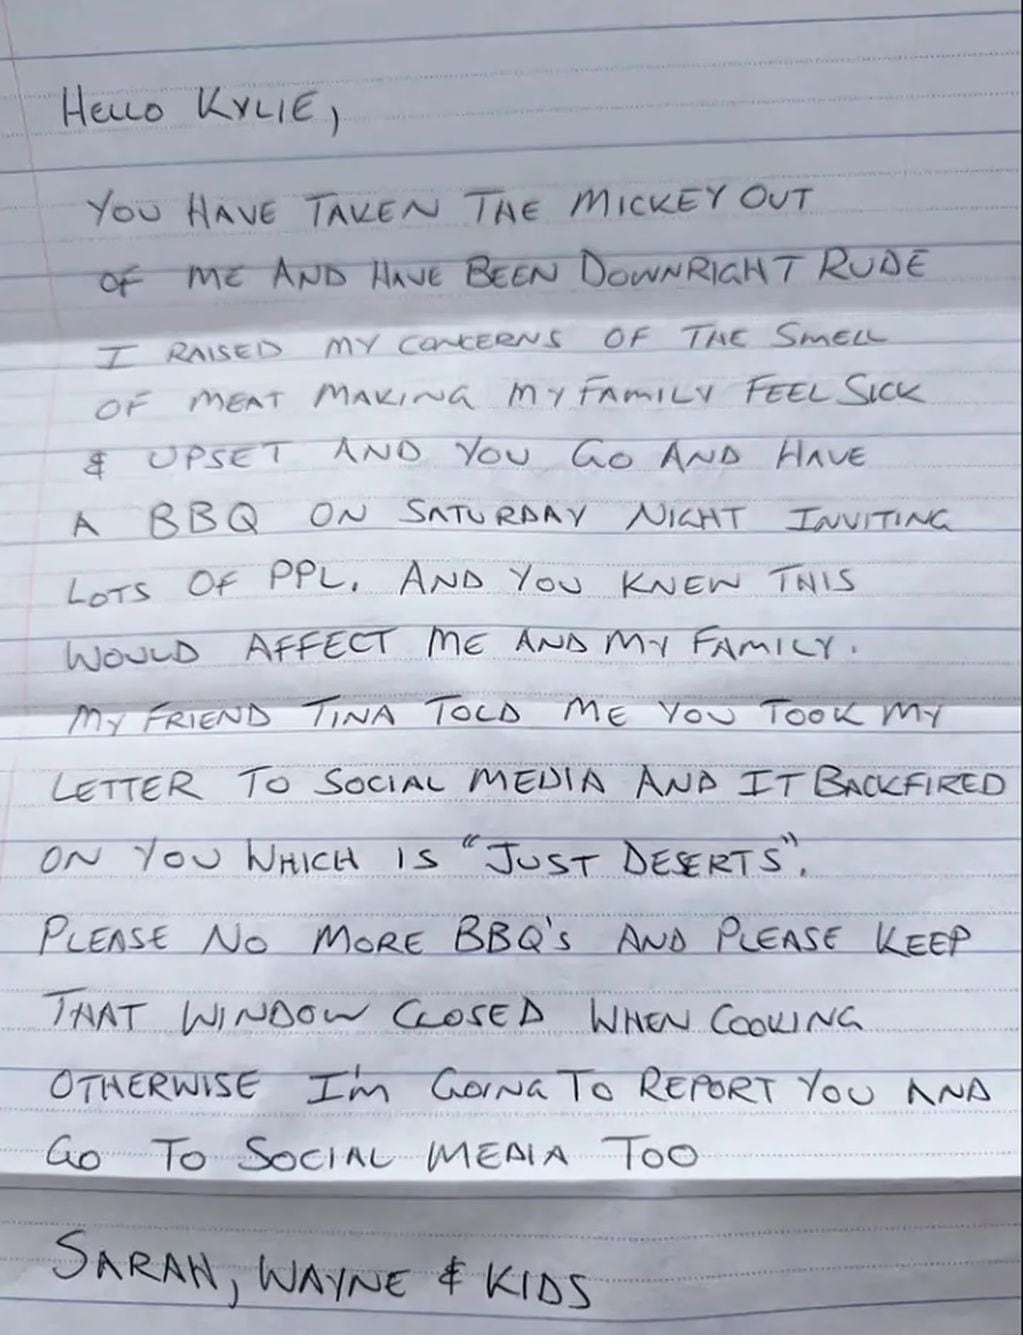 La carta completa donde amenaza a su vecino luego de que no le hiciera caso a su primer pedido. Gentileza: TN.